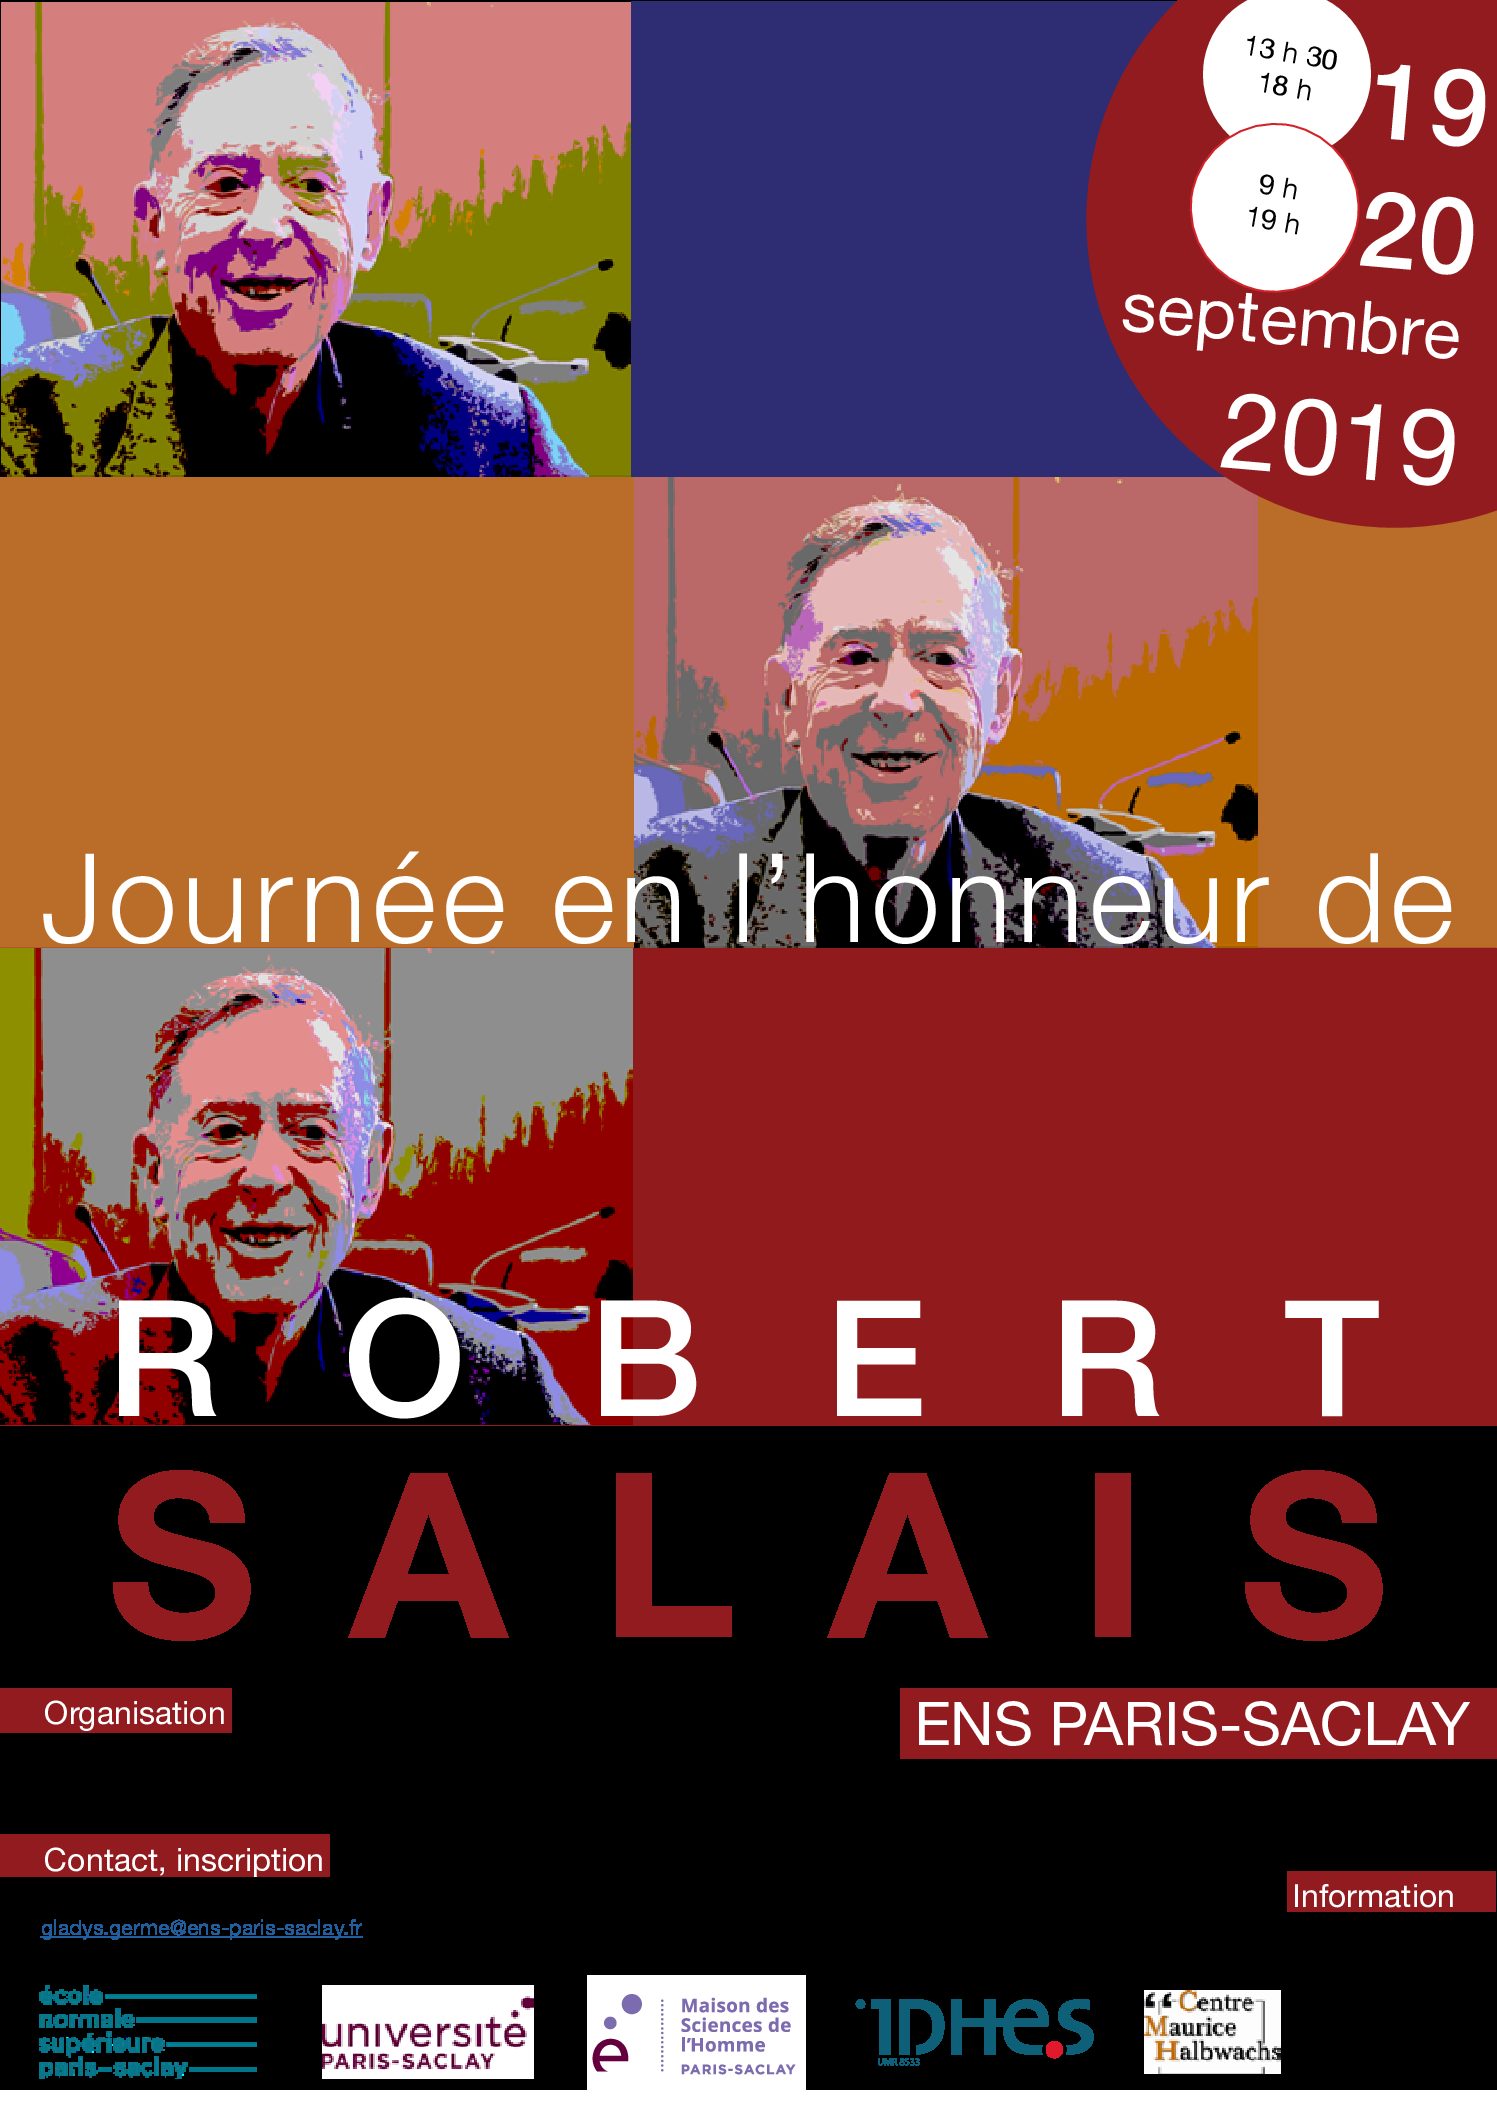 Journée en l’honneur de Robert Salais - 19 & 20/9/2019